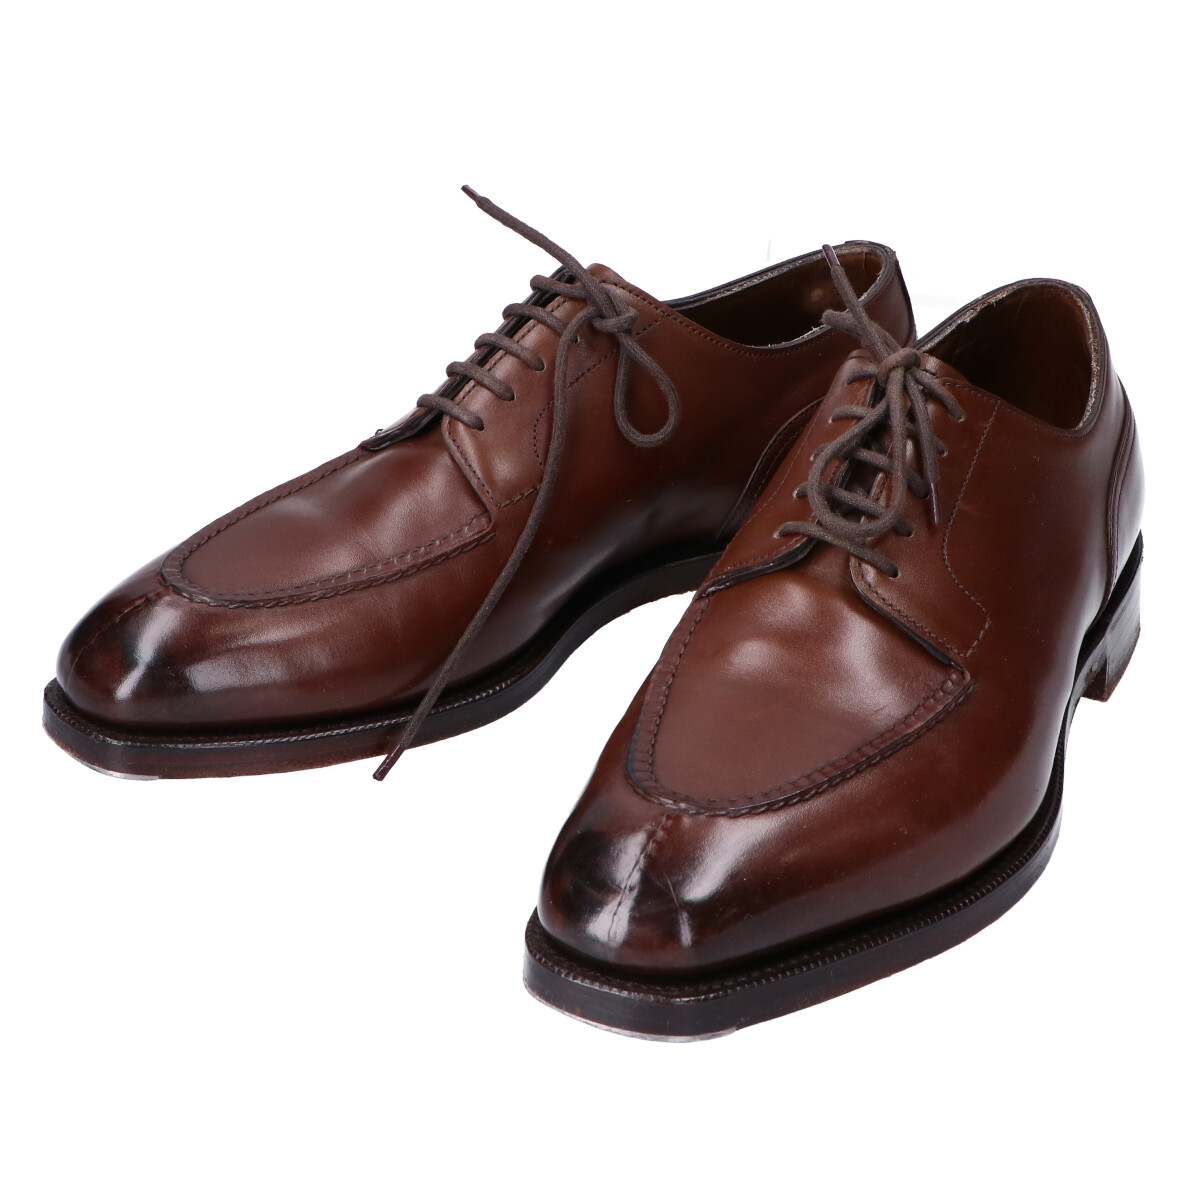 エドワードグリーンのダークオーク ドーバー 606ラスト Uチップ 革靴の買取実績です。